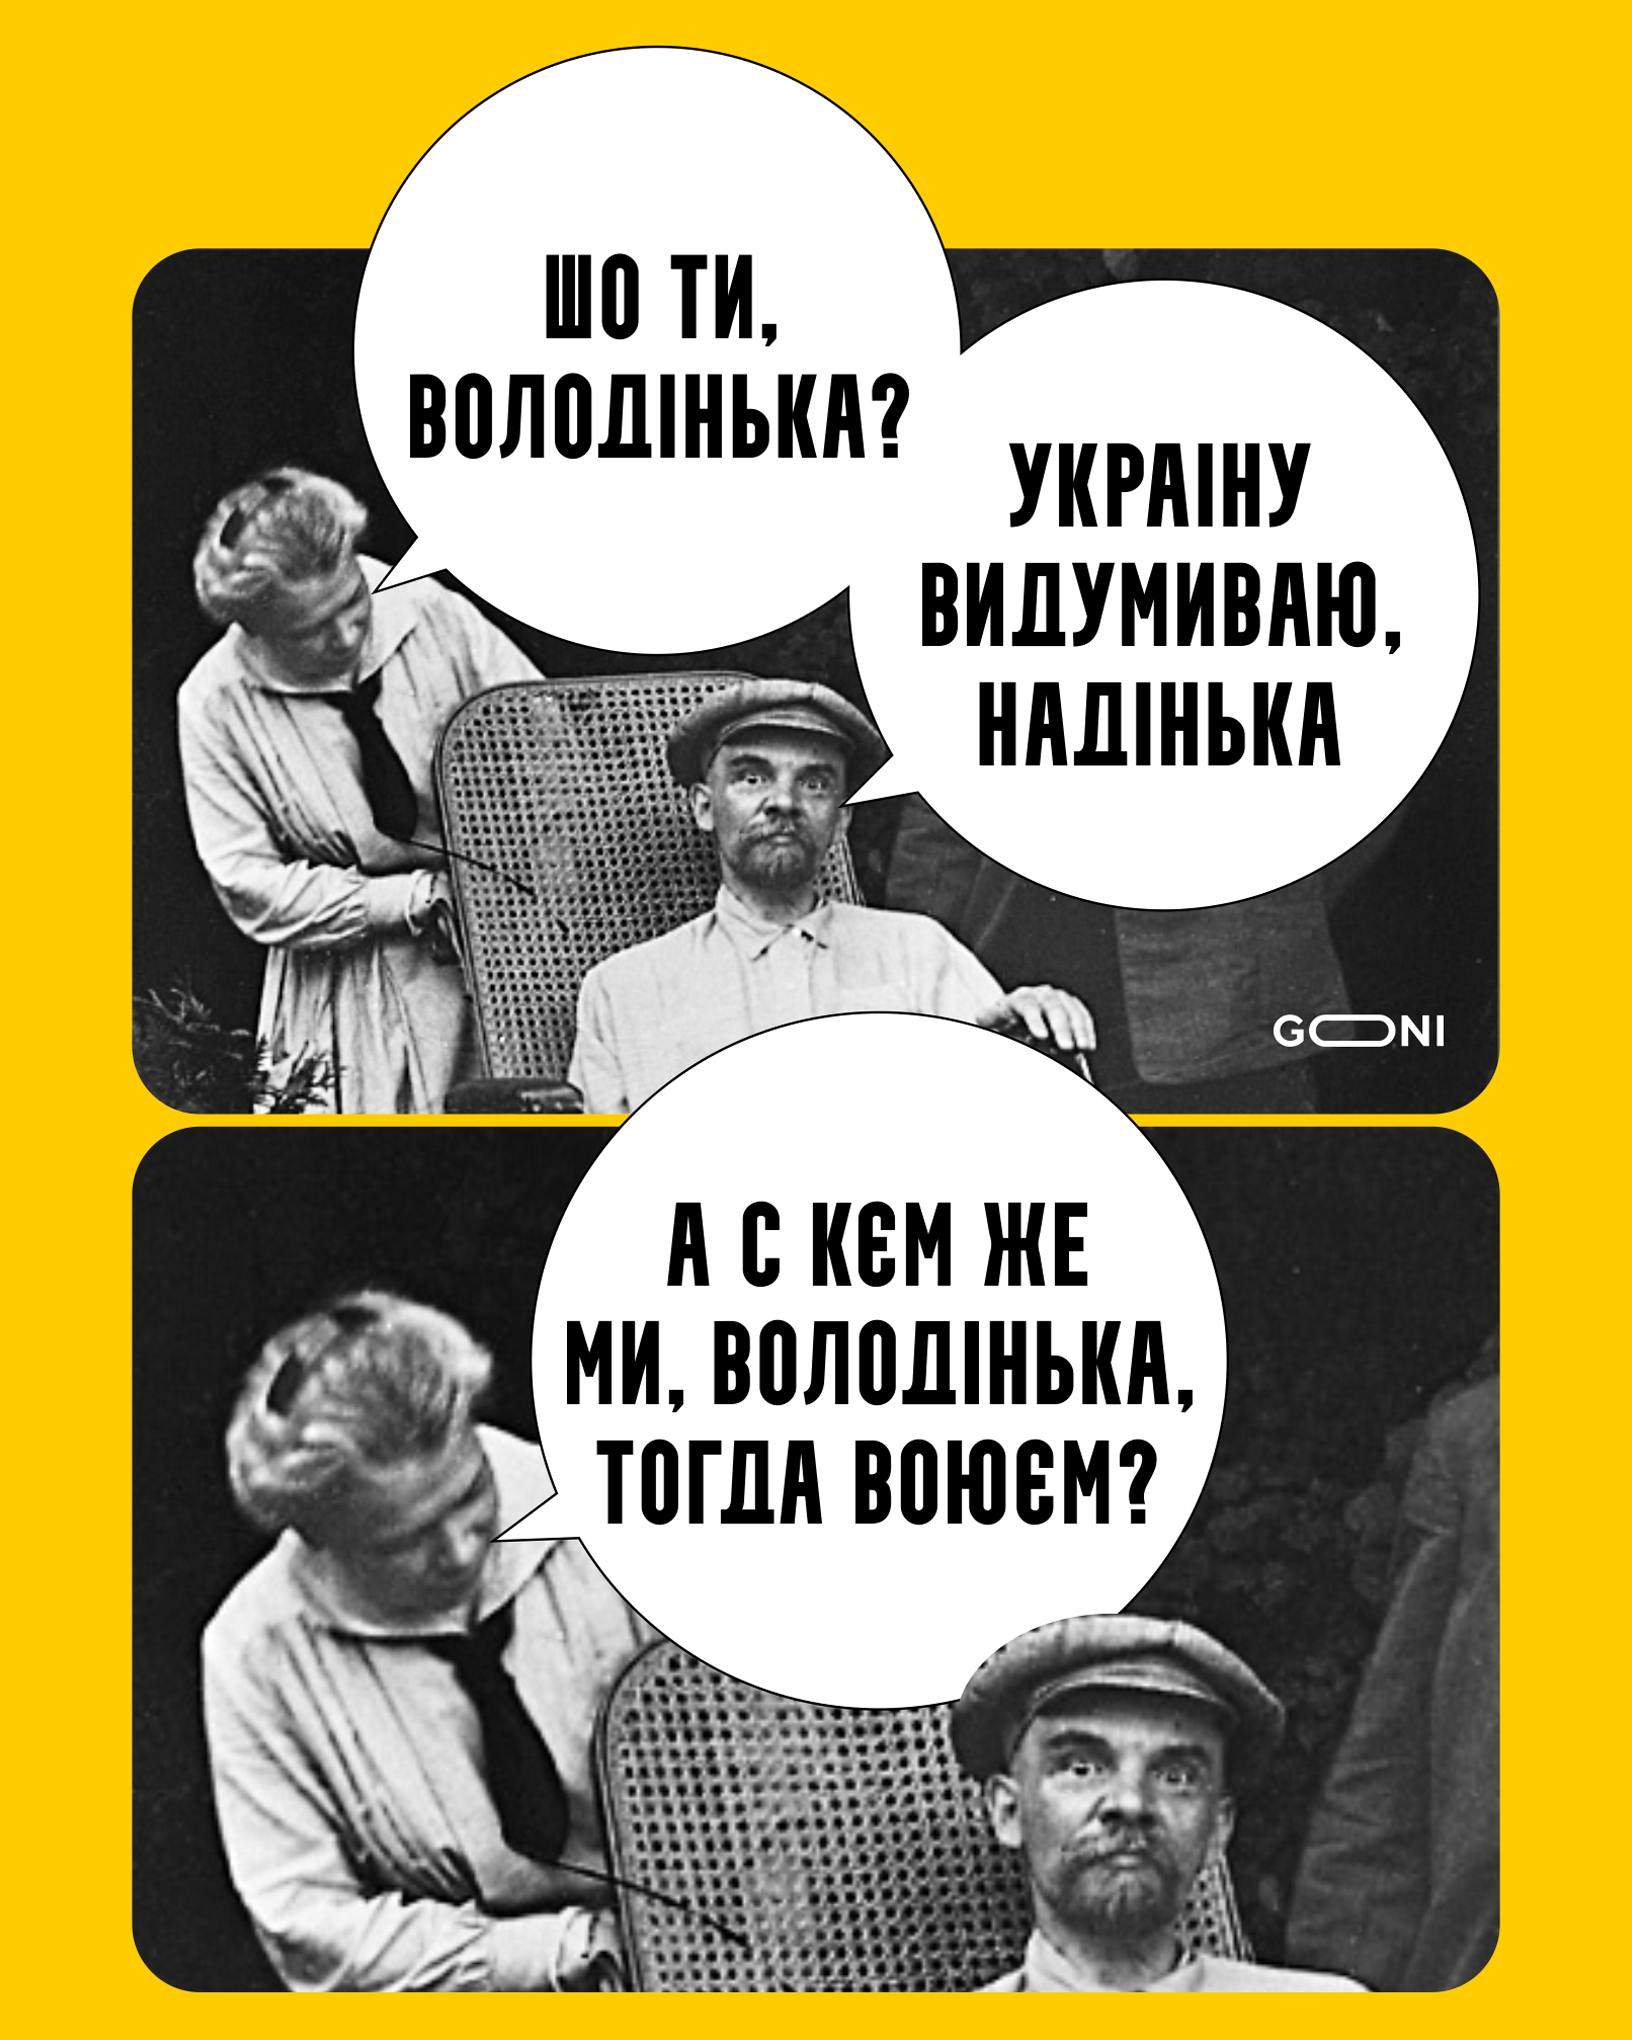 Мемы о Ленине по мотивам вчерашнего выступления президента РФ. || Картинка: Goni мемасы 